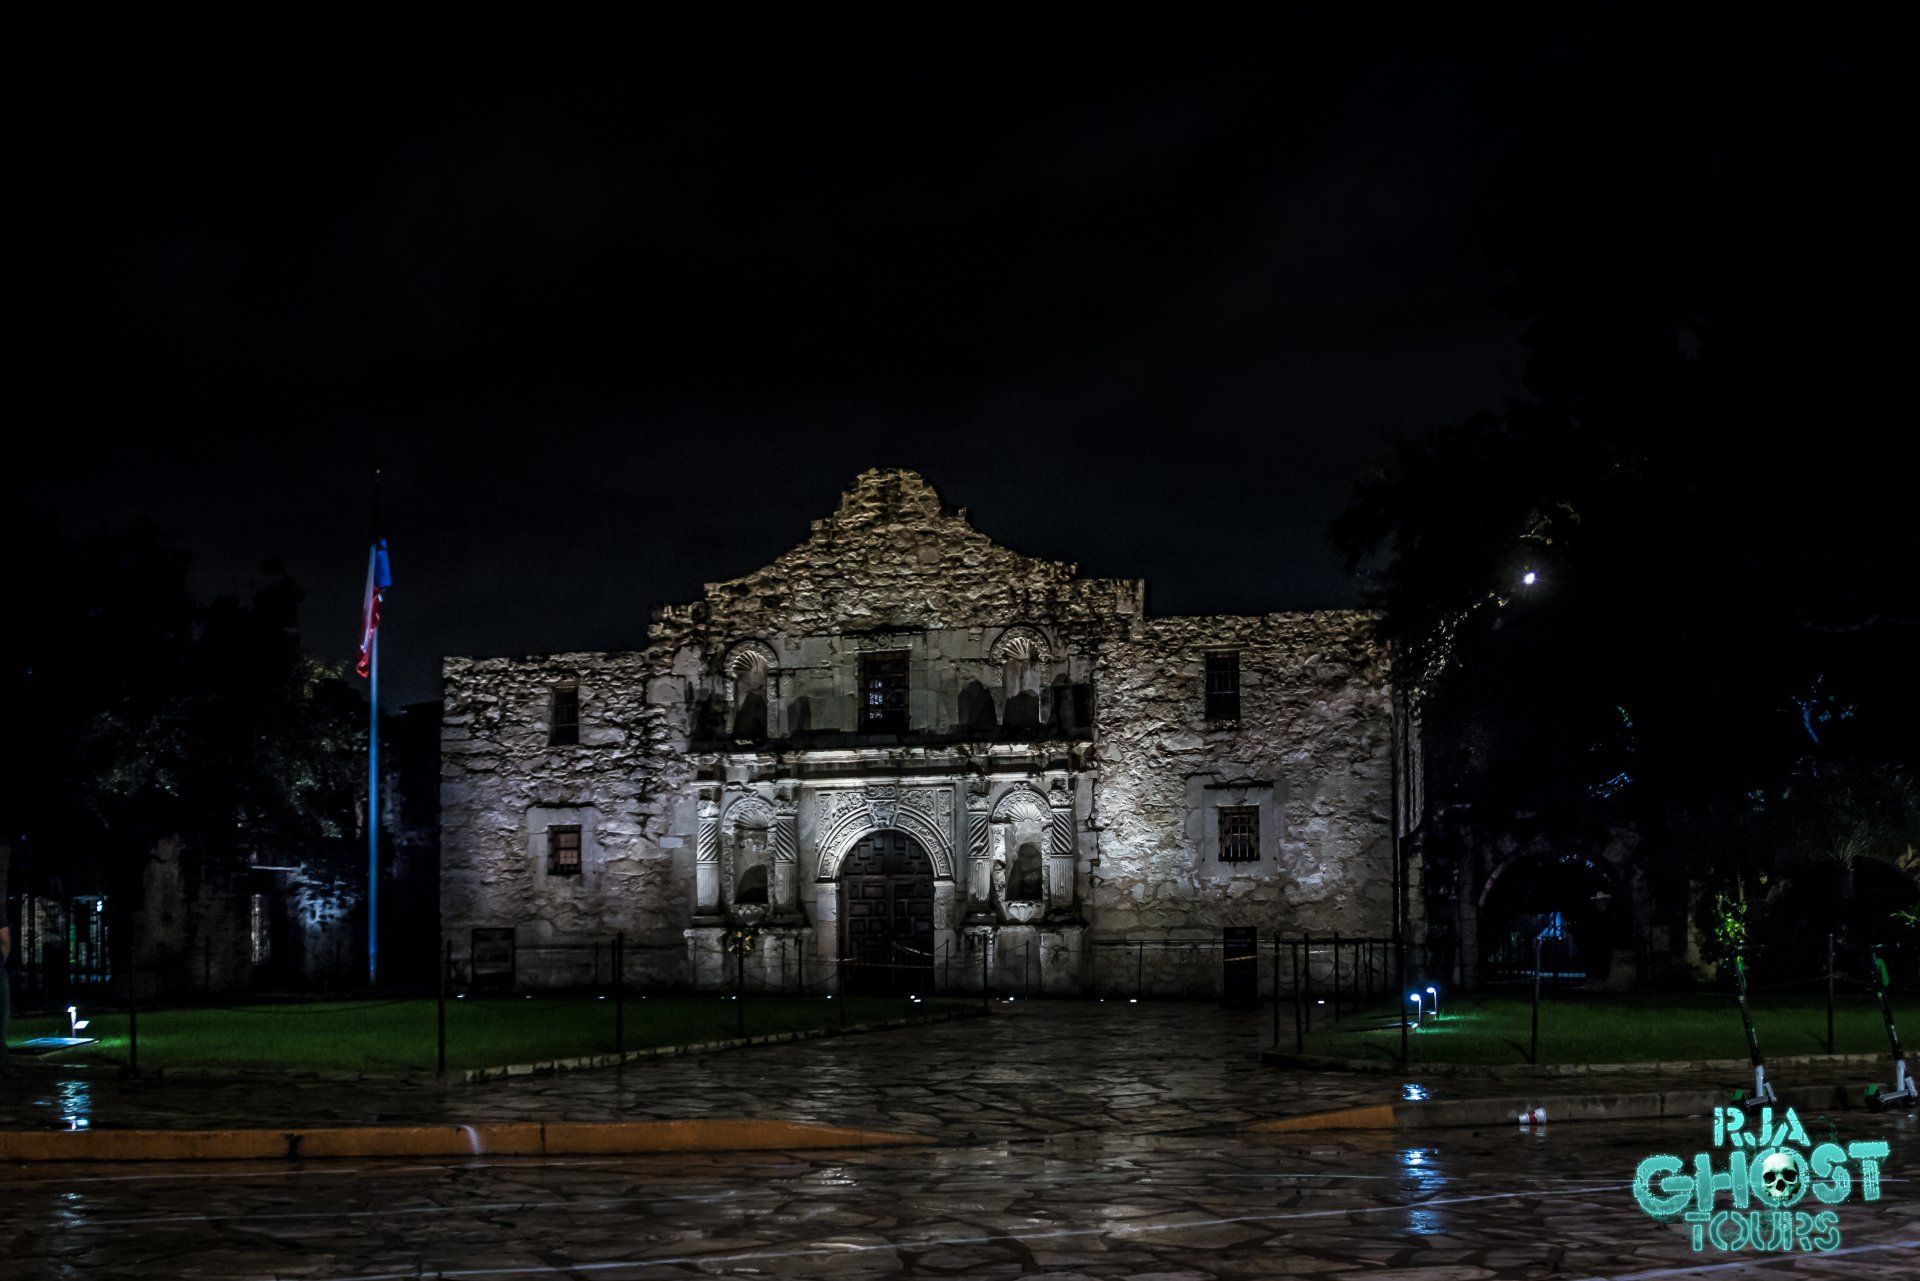 An image of the Alamo in San Antonio, taken on an RJA Ghost Tours tour.